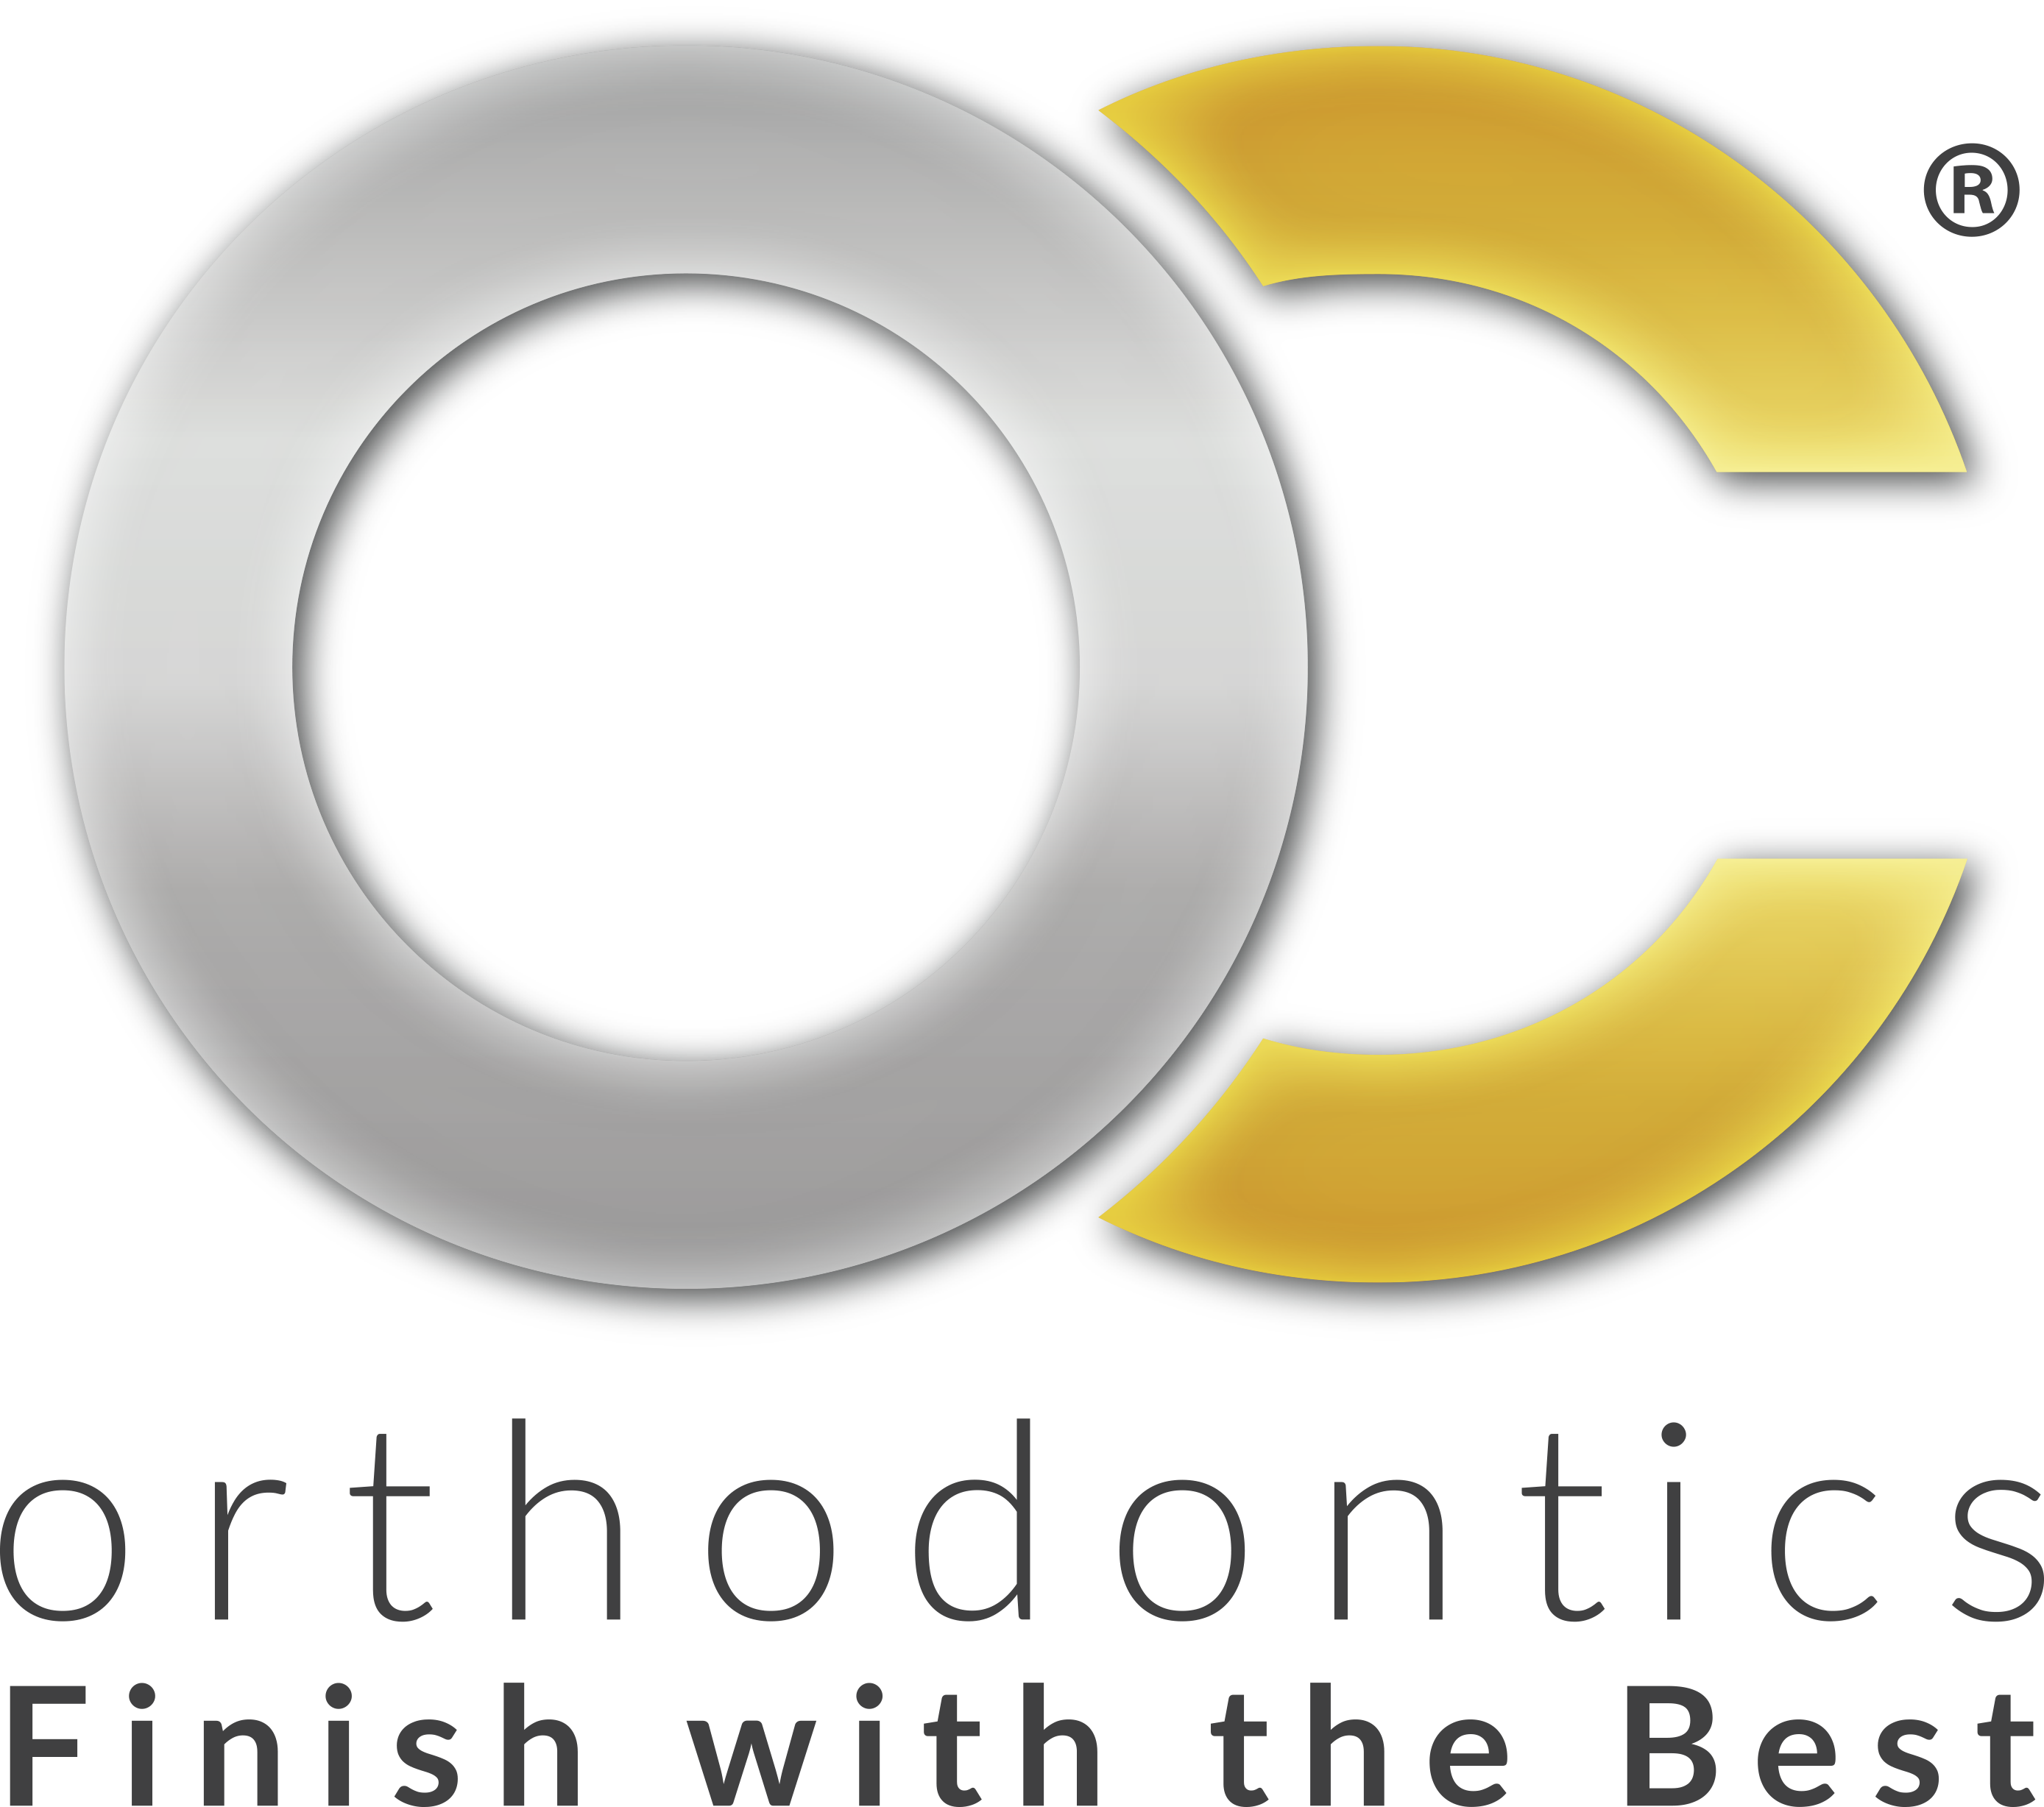 Bronze - OC Orthodontics